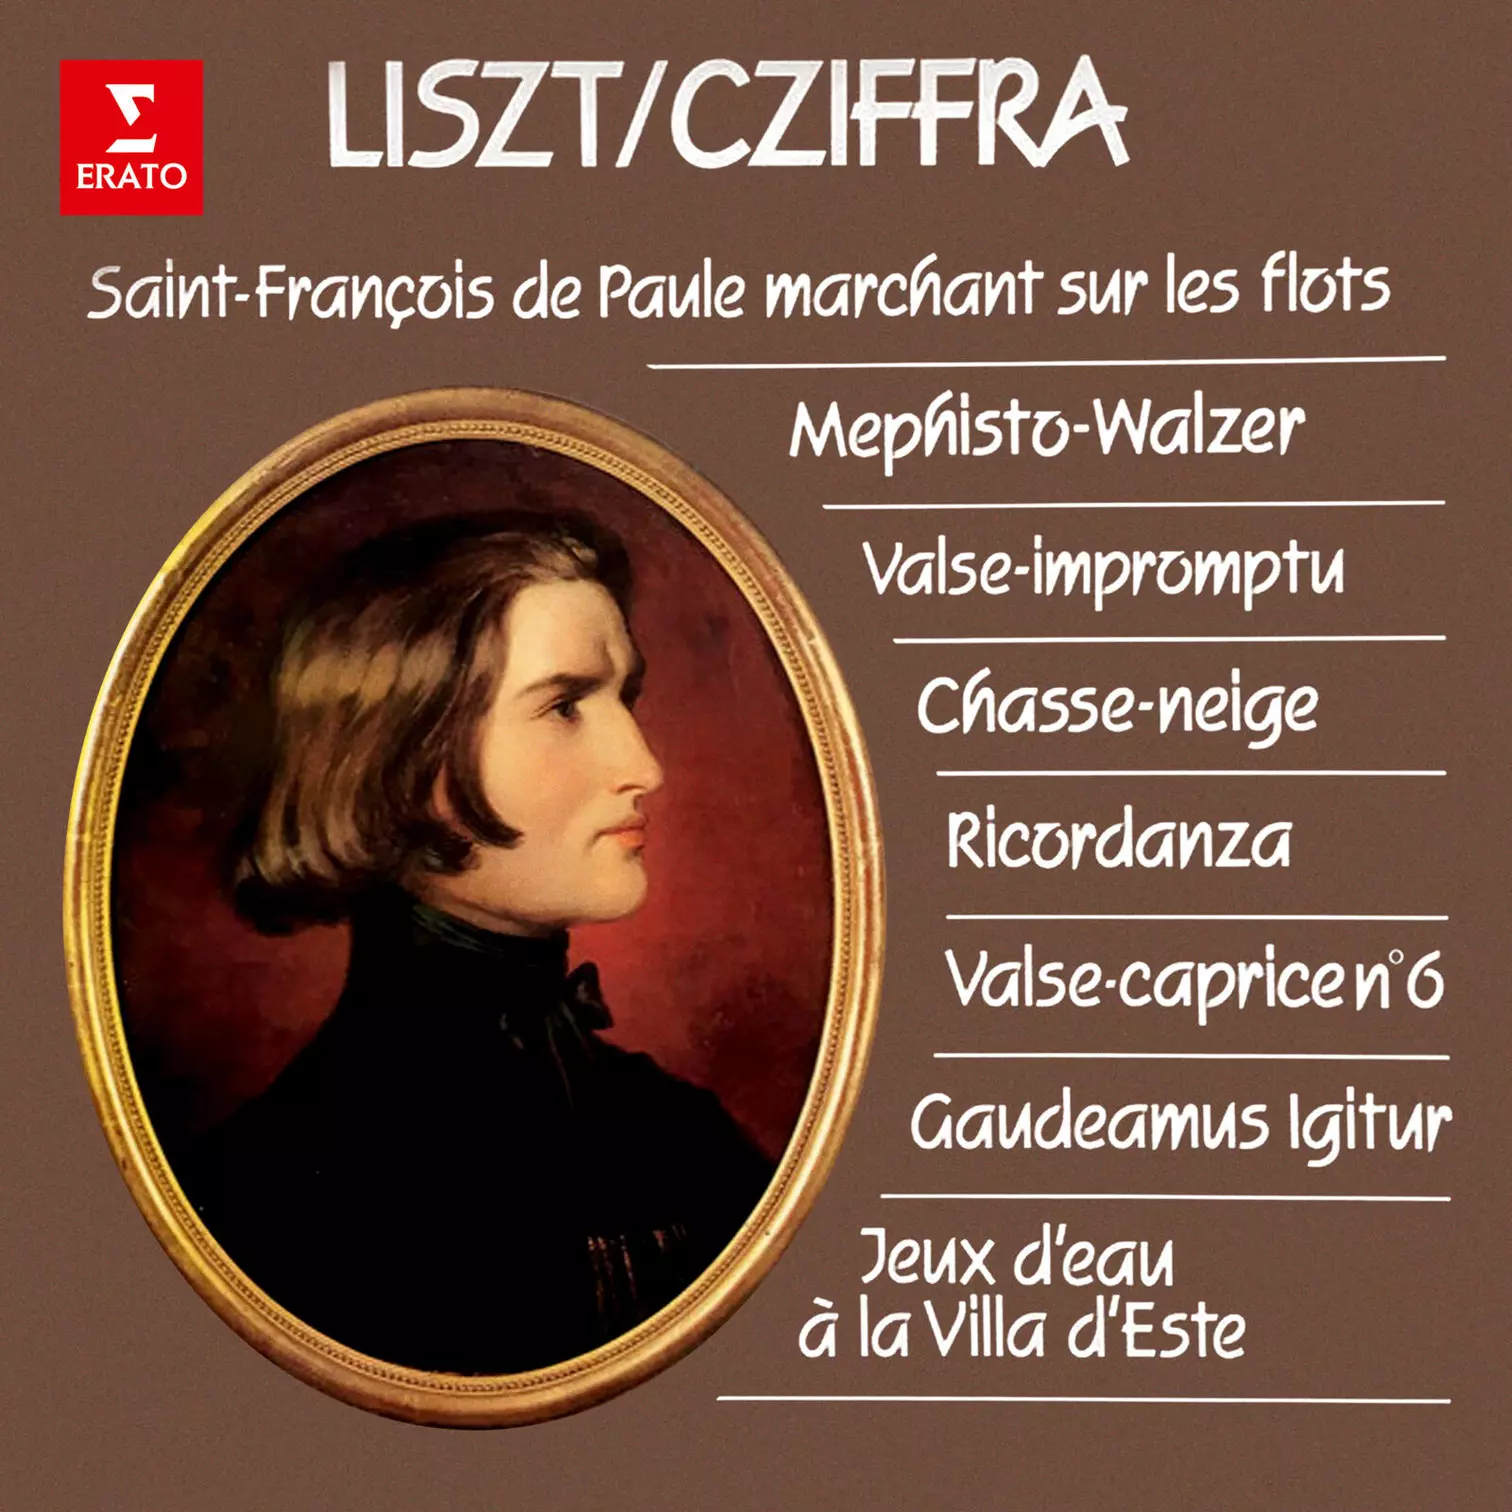 Liszt/Cziffra